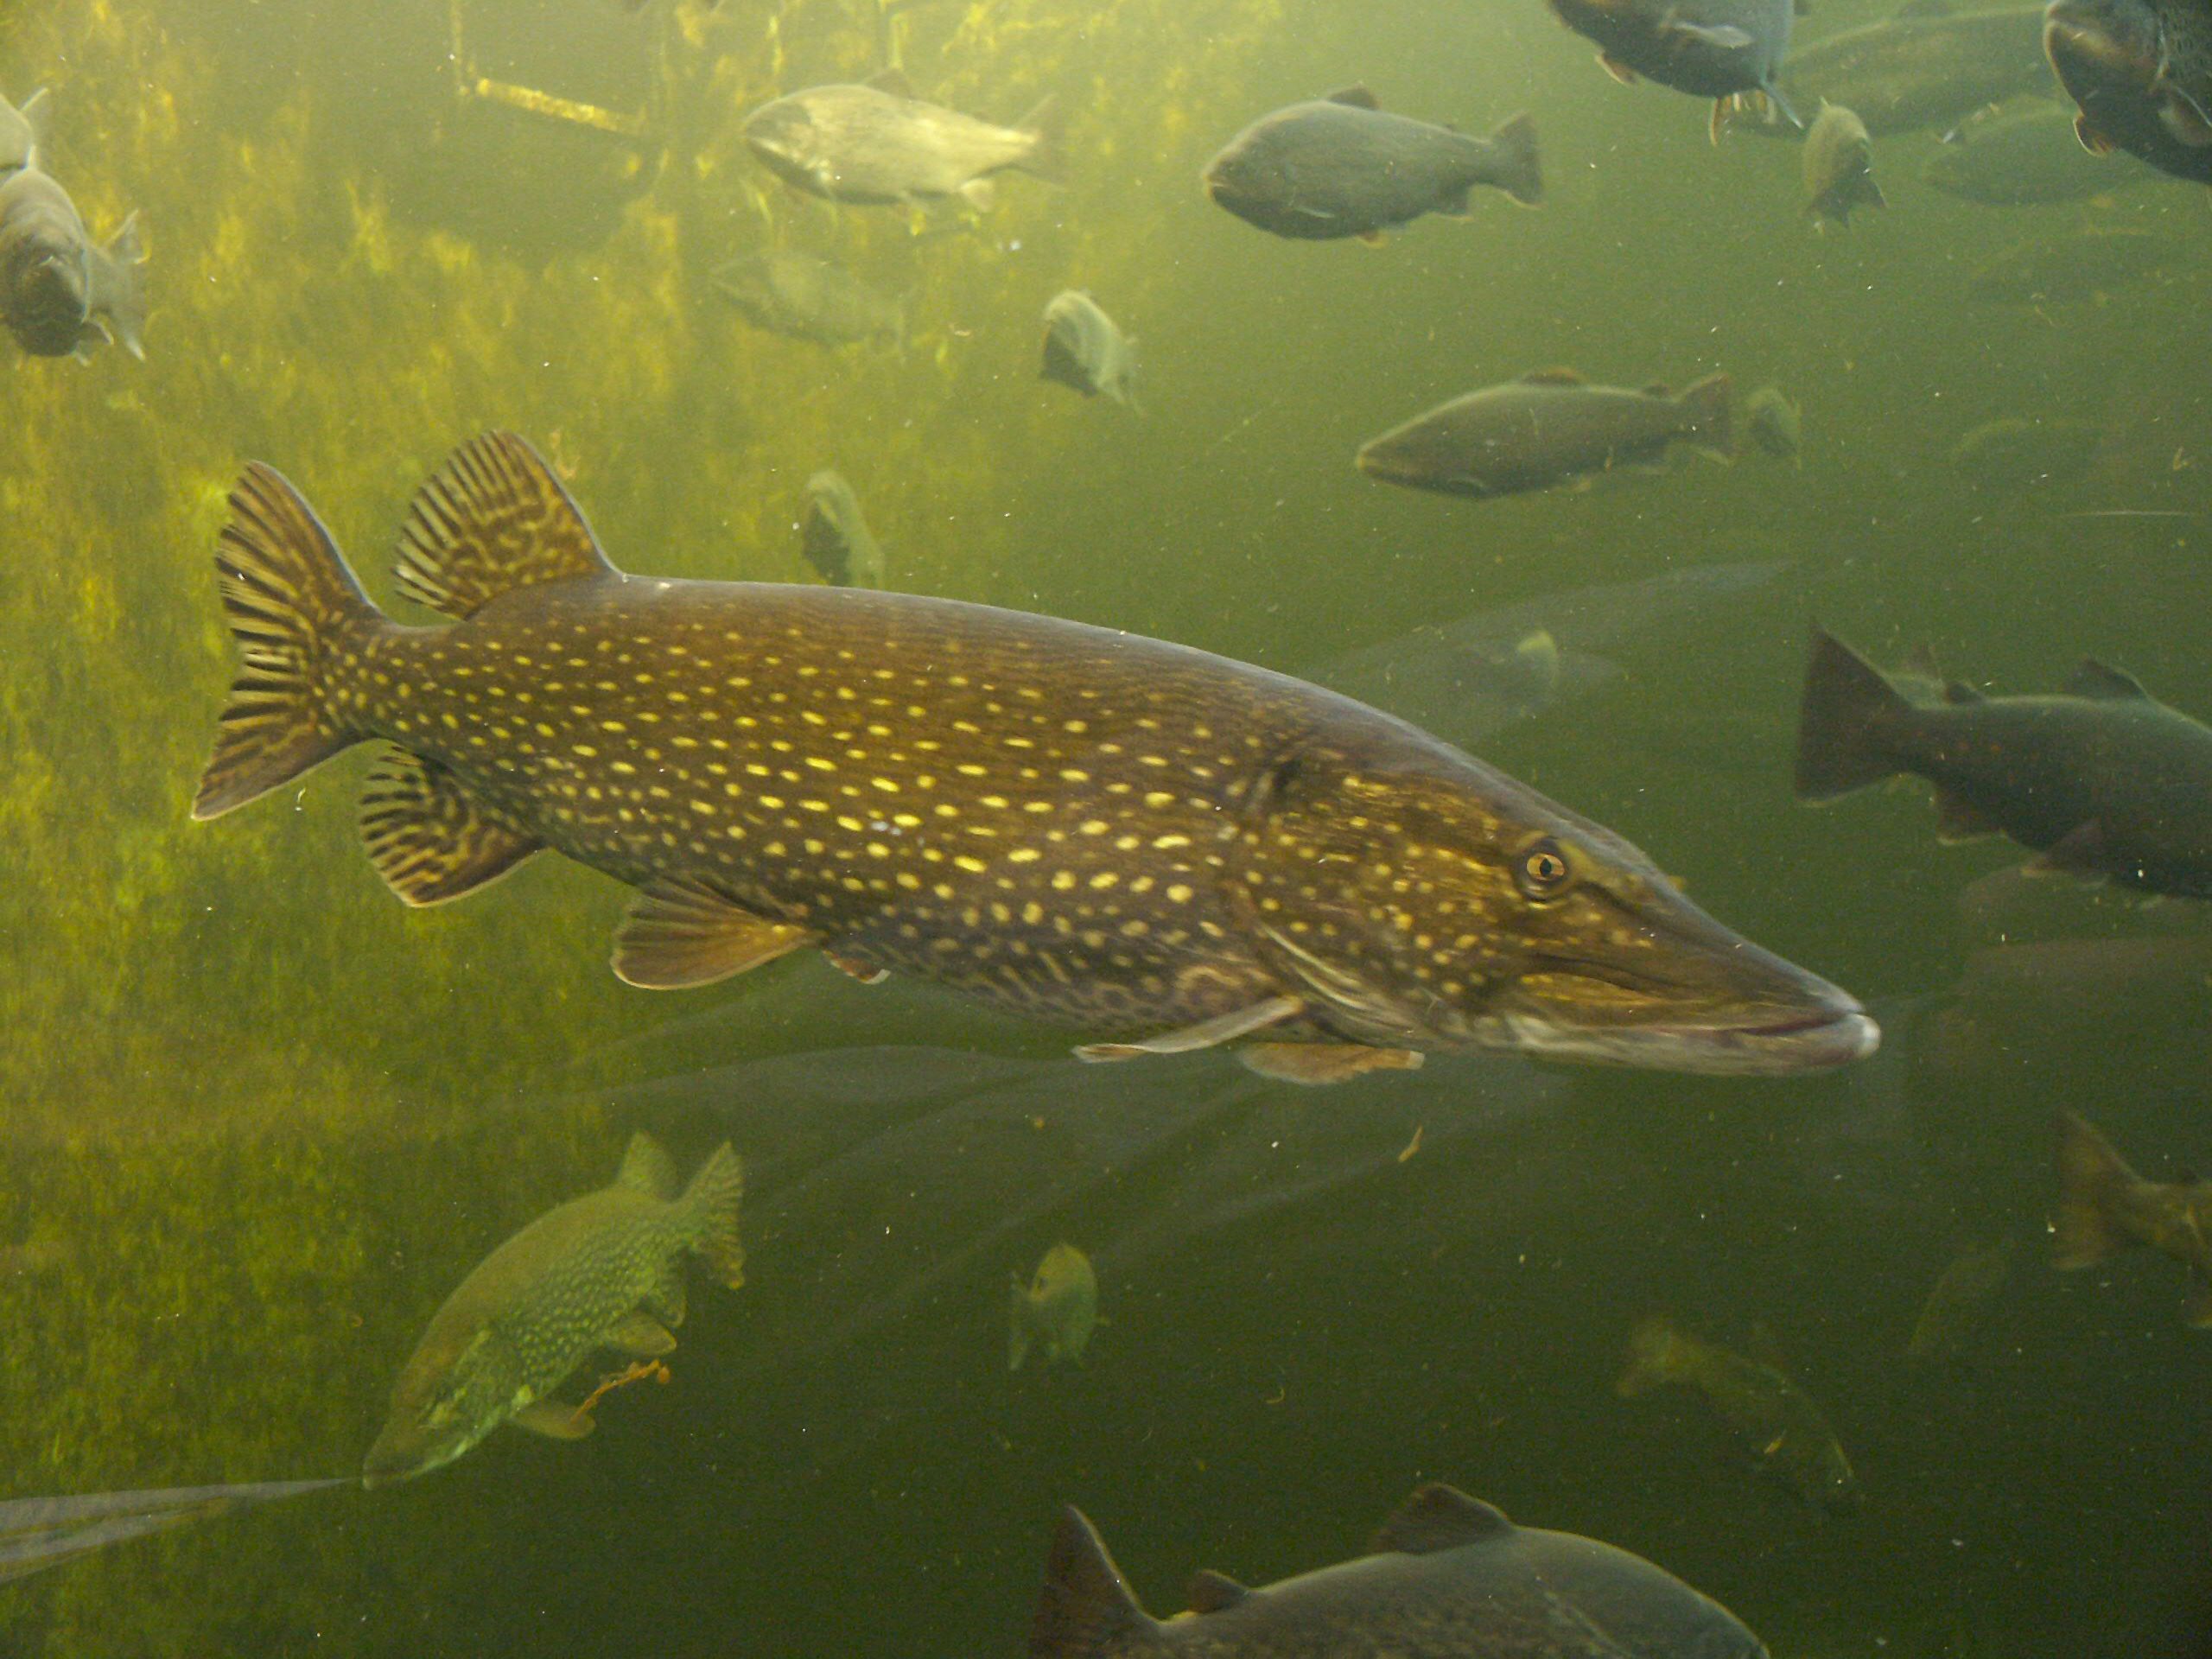 Pike in un aquarium publicu (Kotka, Finlandia)